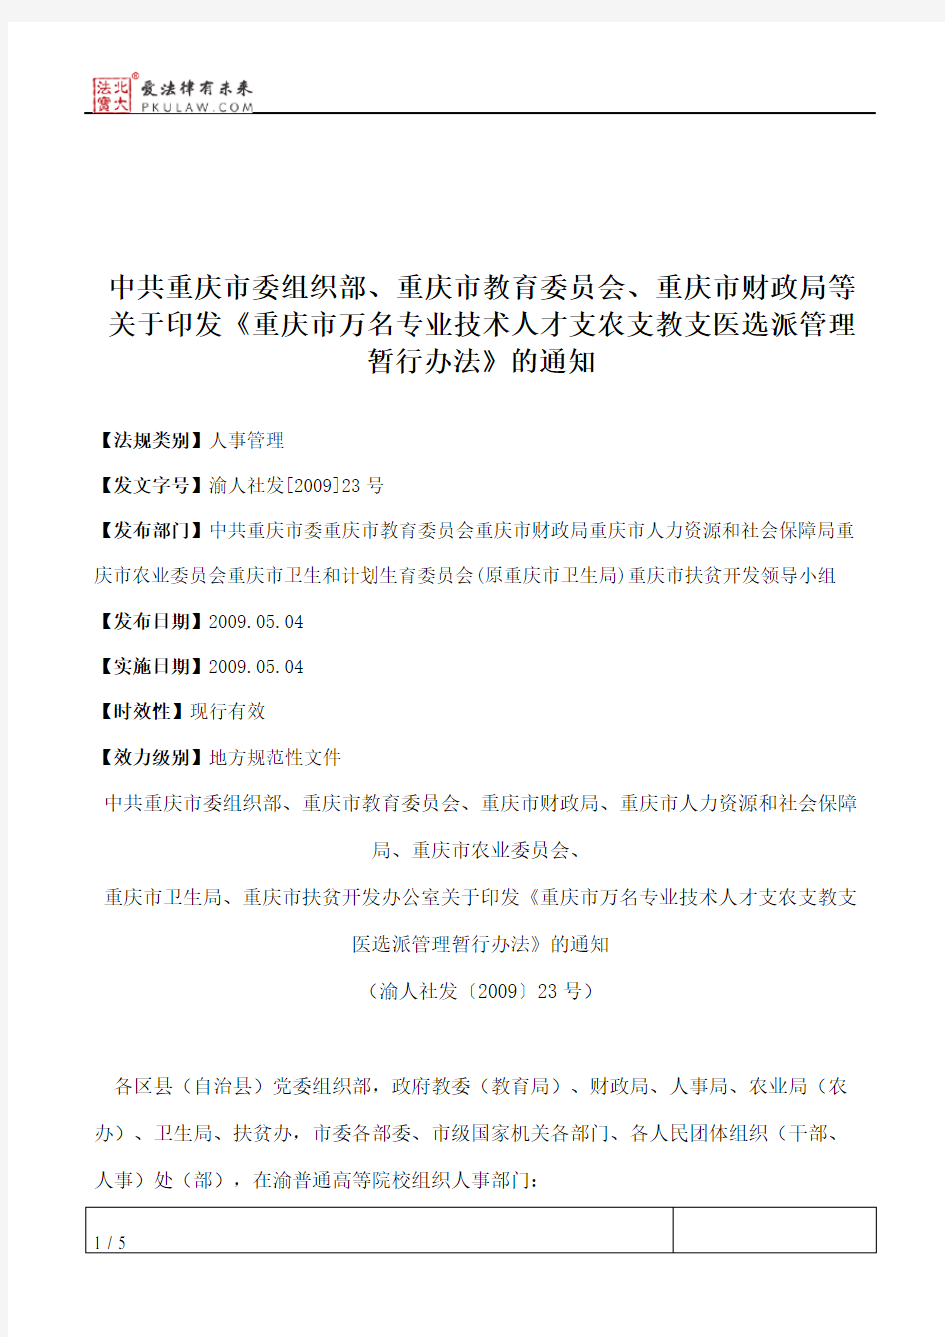 中共重庆市委组织部、重庆市教育委员会、重庆市财政局等关于印发